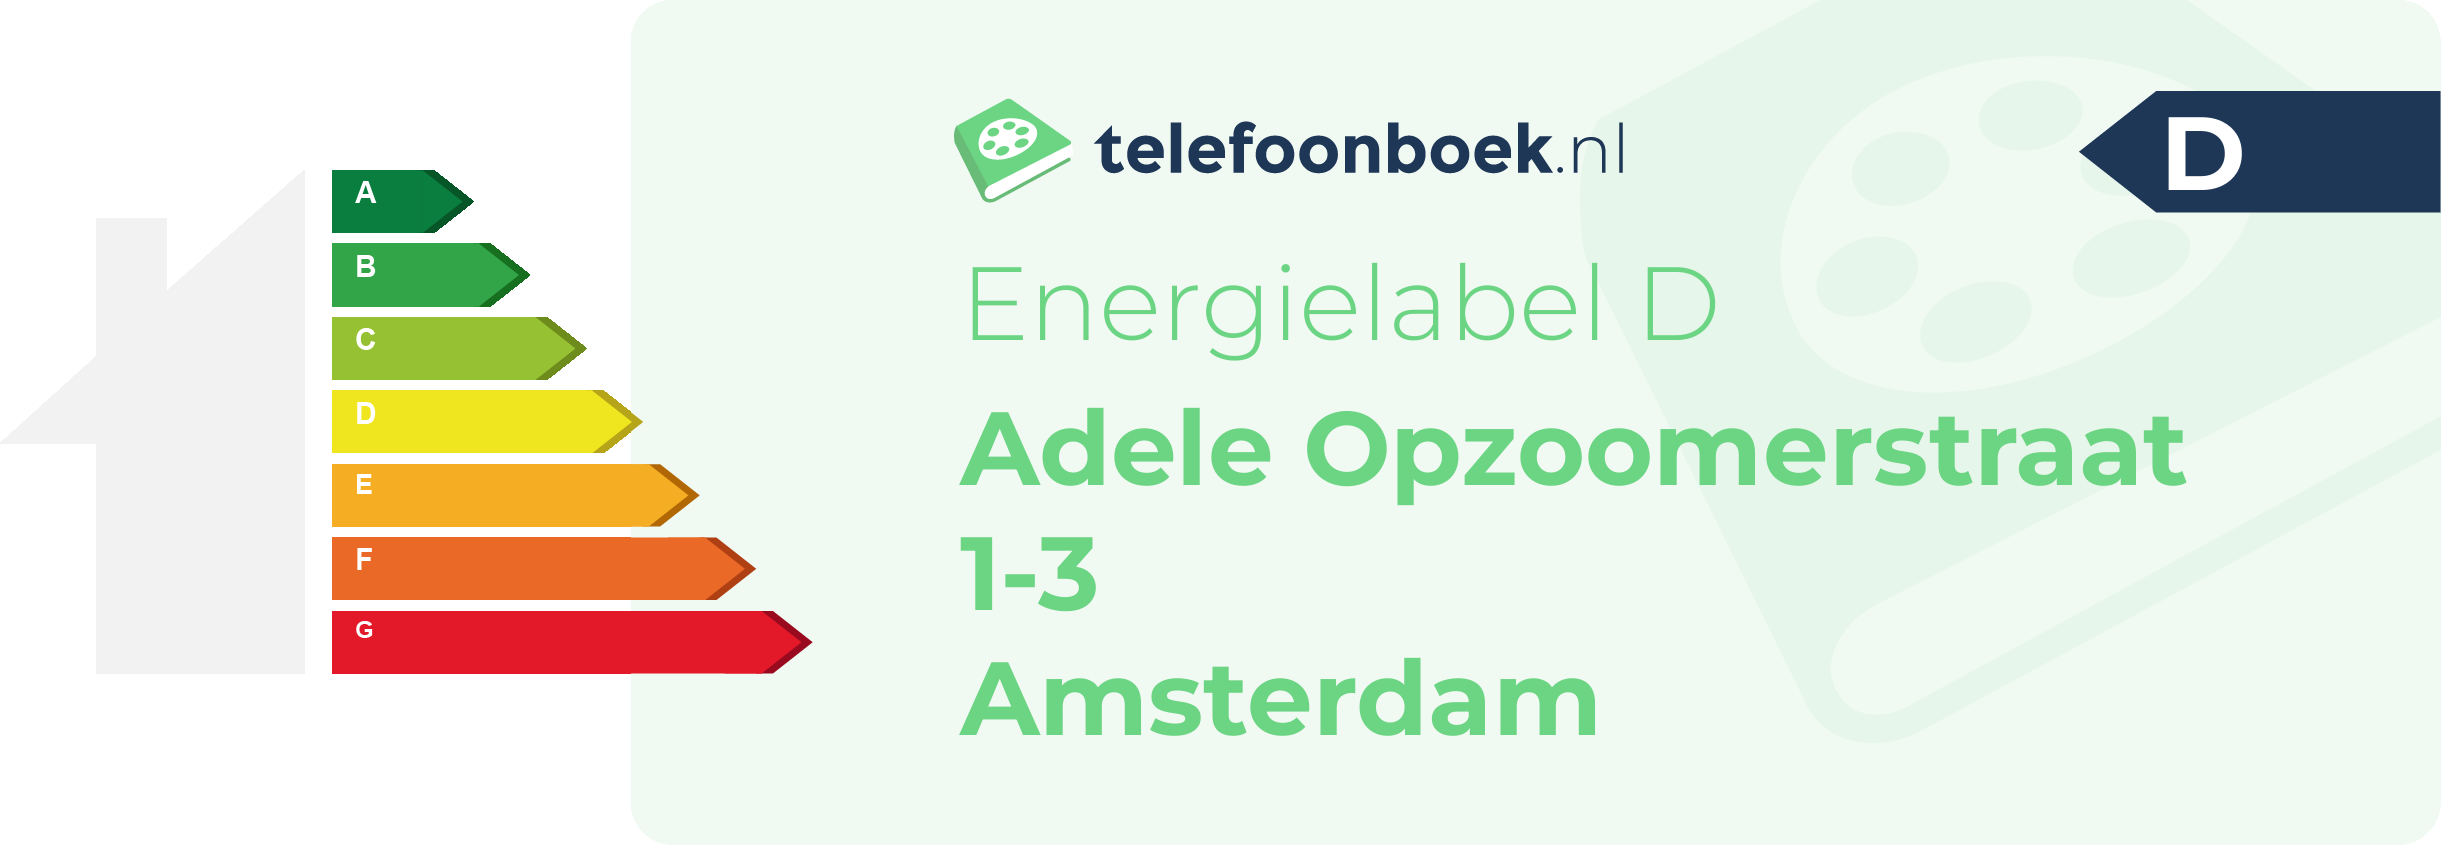 Energielabel Adele Opzoomerstraat 1-3 Amsterdam